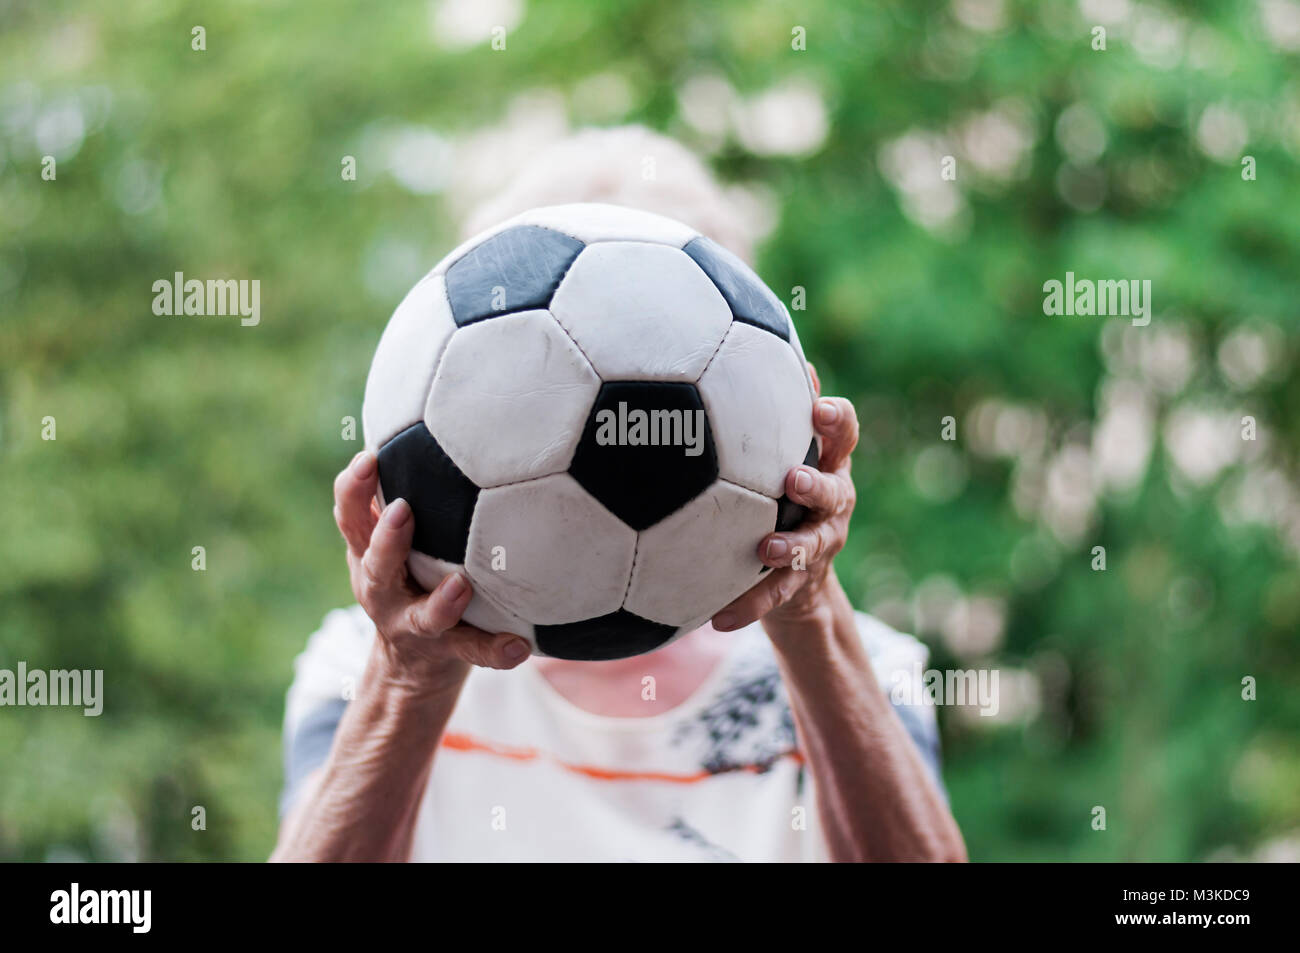 Aktive aeltere Frau faengt Fussball. Nahaufnahme von Haende und Fussball. Stock Photo